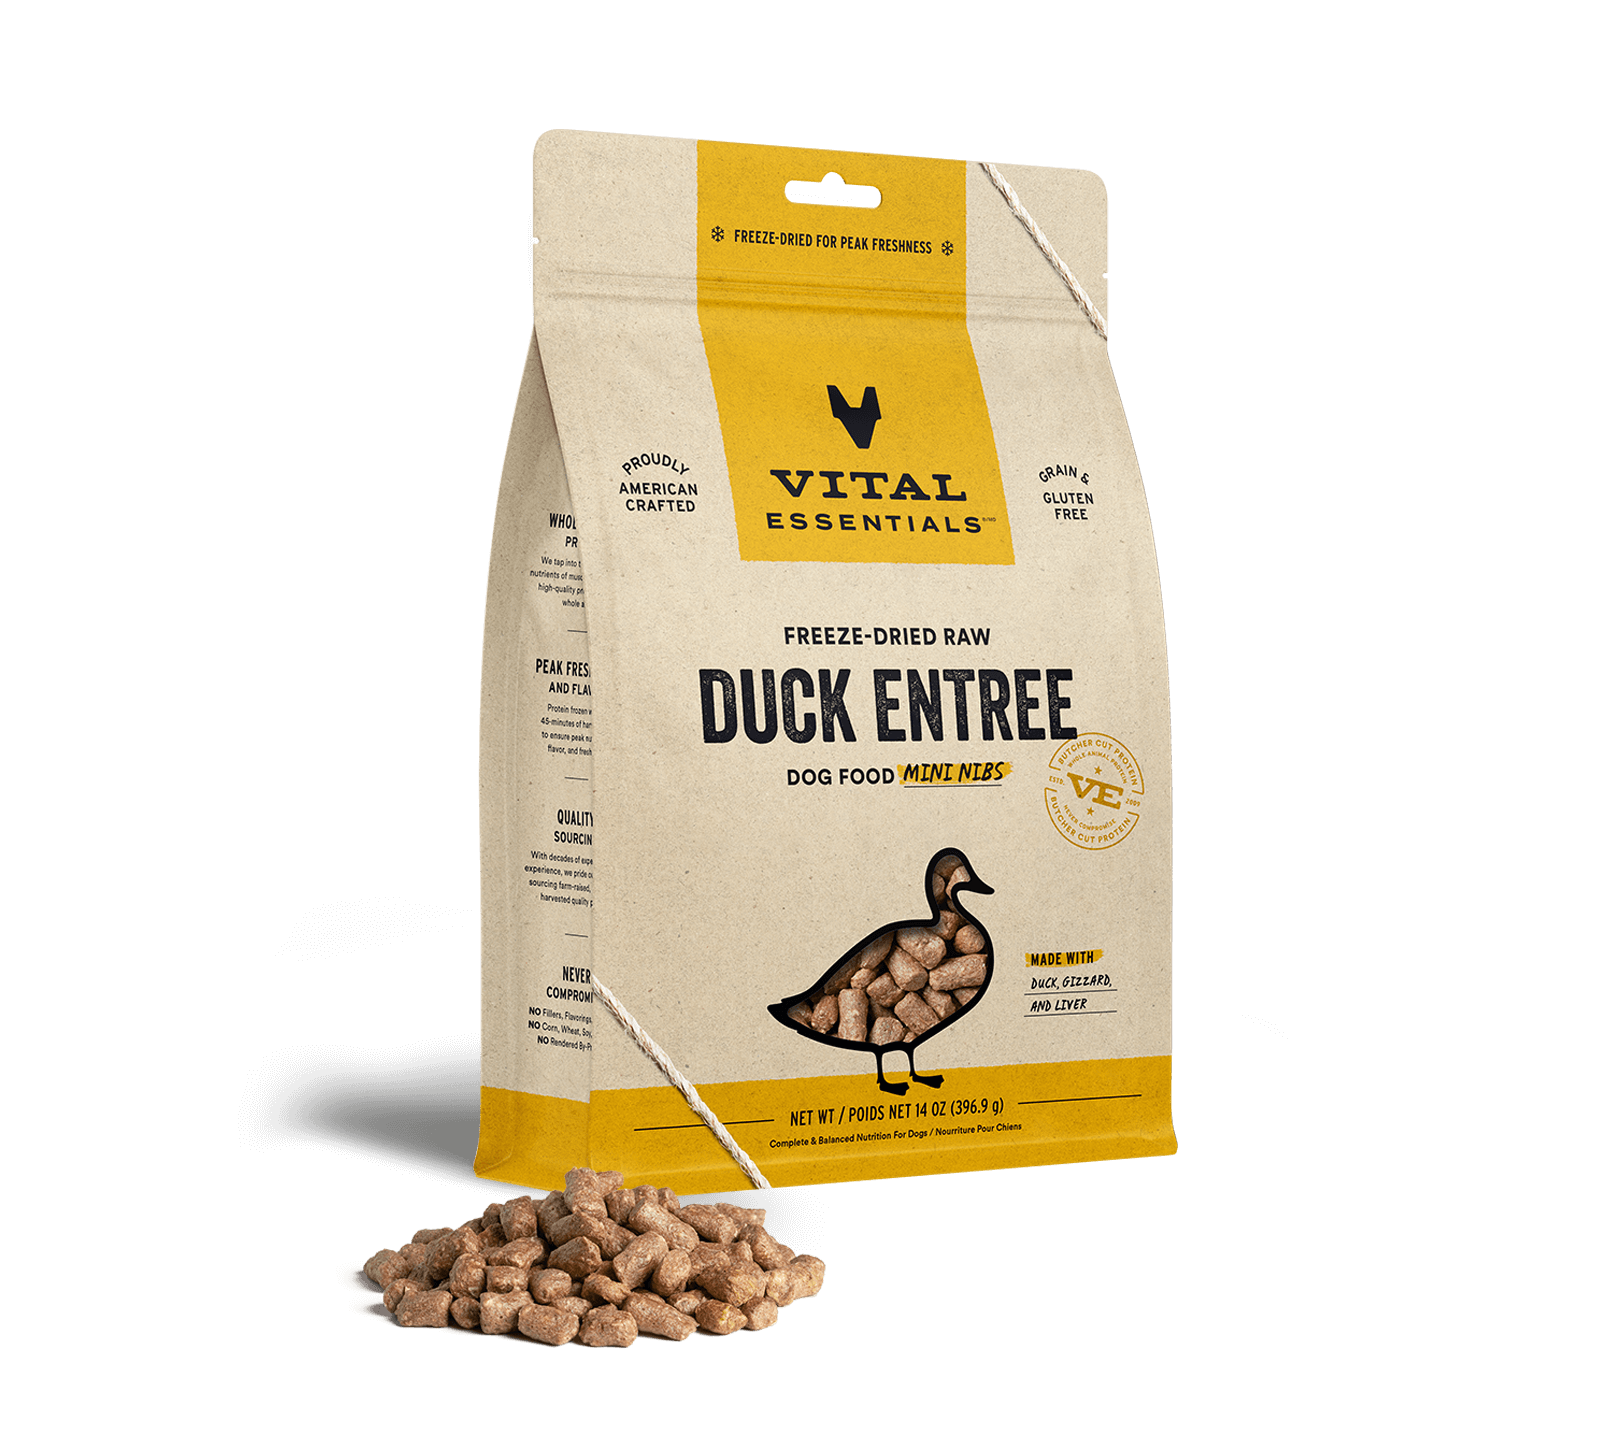 Vital Essentials Freeze-Dried Raw Duck Entree Dog Food Mini Nibs, 14 oz - Treats